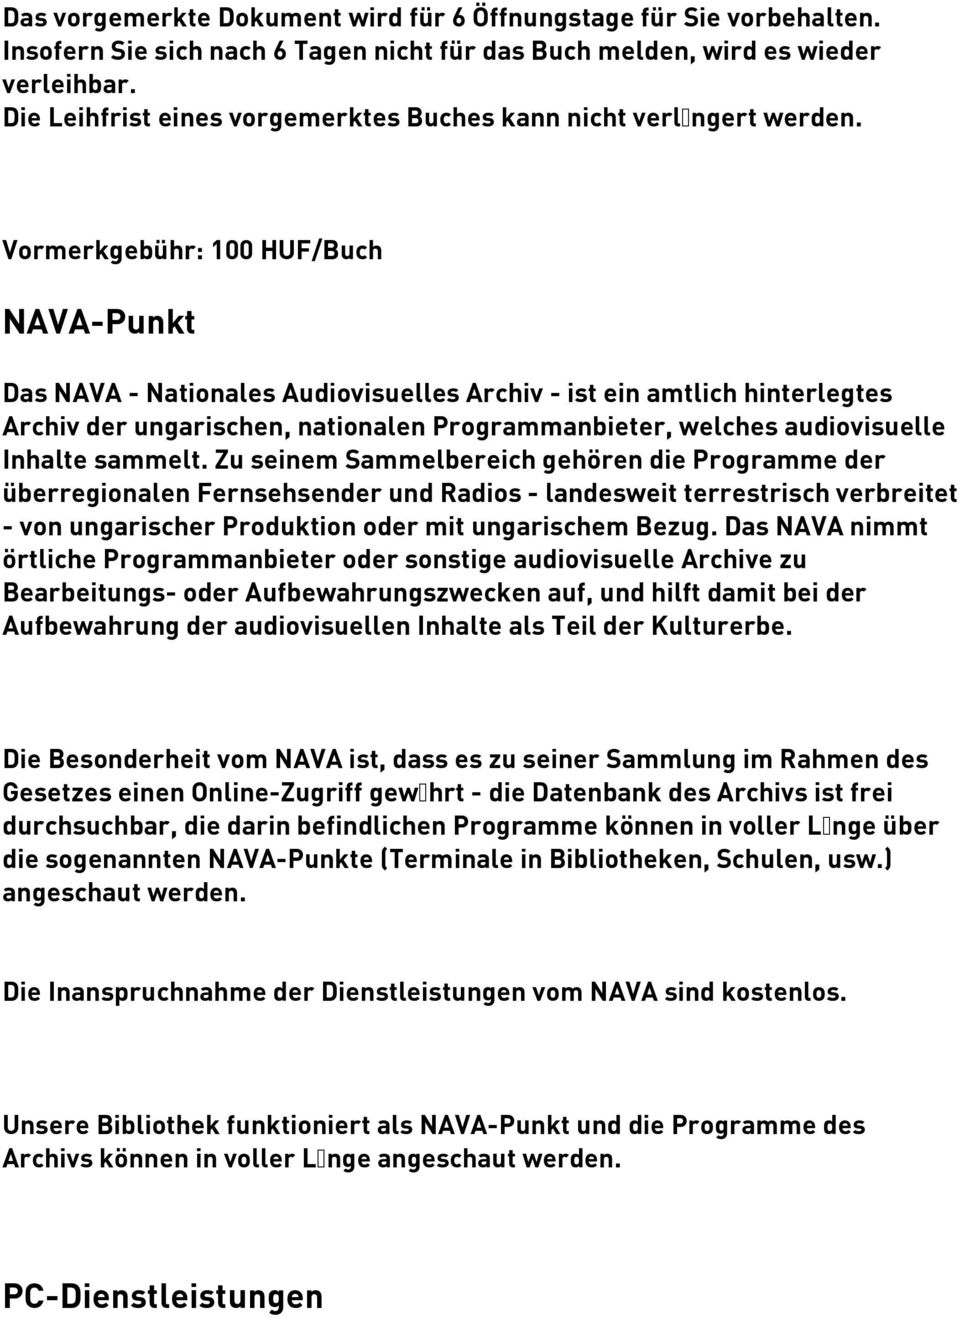 Vormerkgebühr: 100 HUF/Buch NAVA-Punkt Das NAVA - Nationales Audiovisuelles Archiv - ist ein amtlich hinterlegtes Archiv der ungarischen, nationalen Programmanbieter, welches audiovisuelle Inhalte